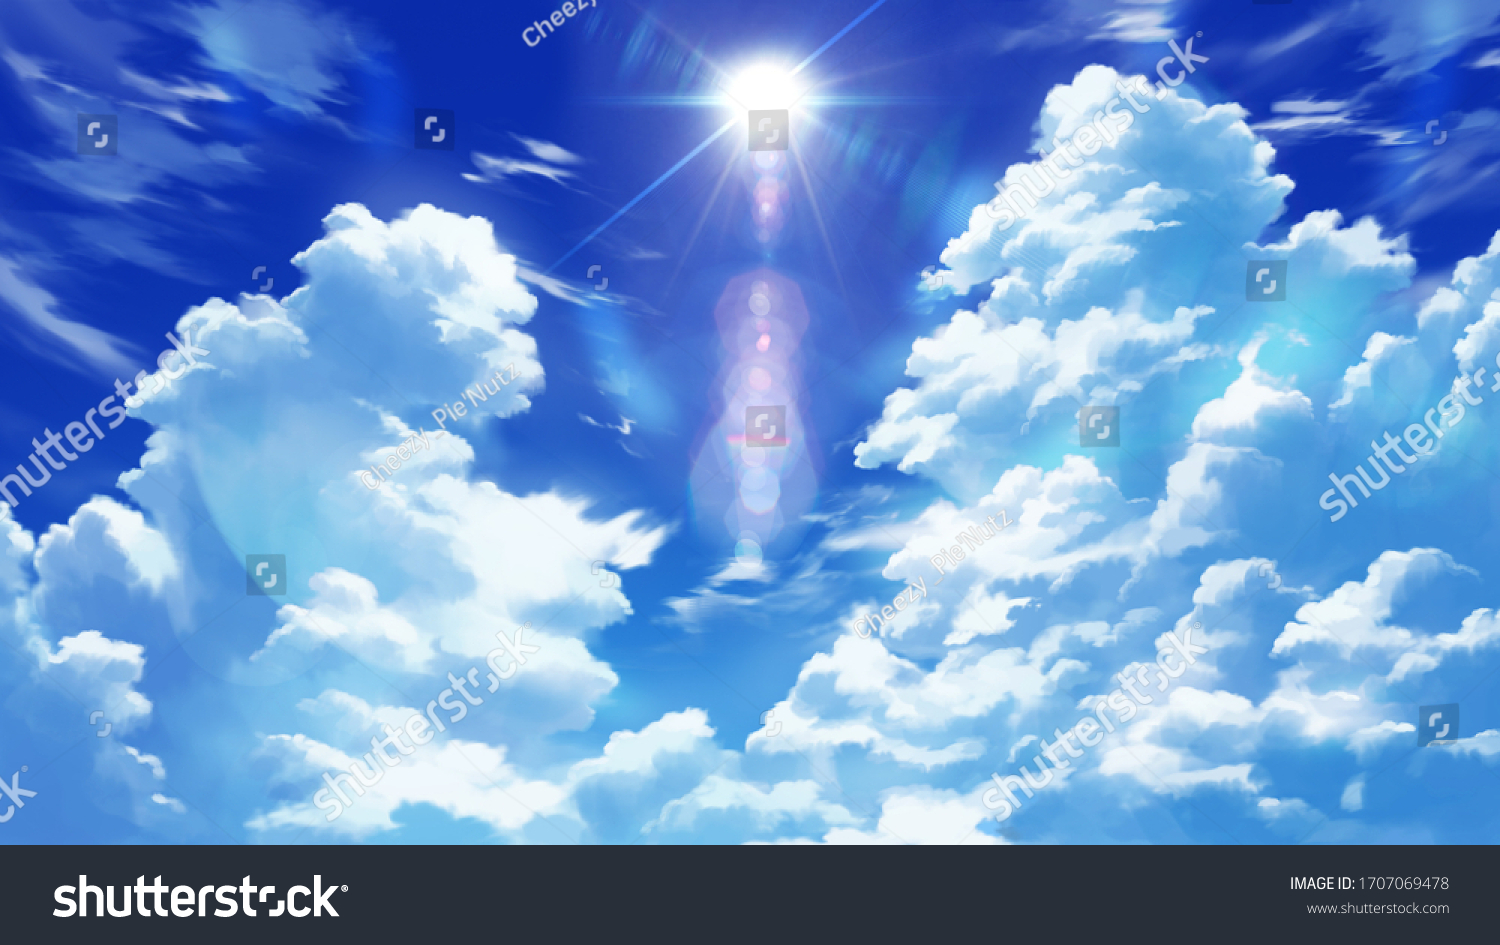 ドラマチックなアニメ雲壁紙イラスト背景 のイラスト素材 Shutterstock